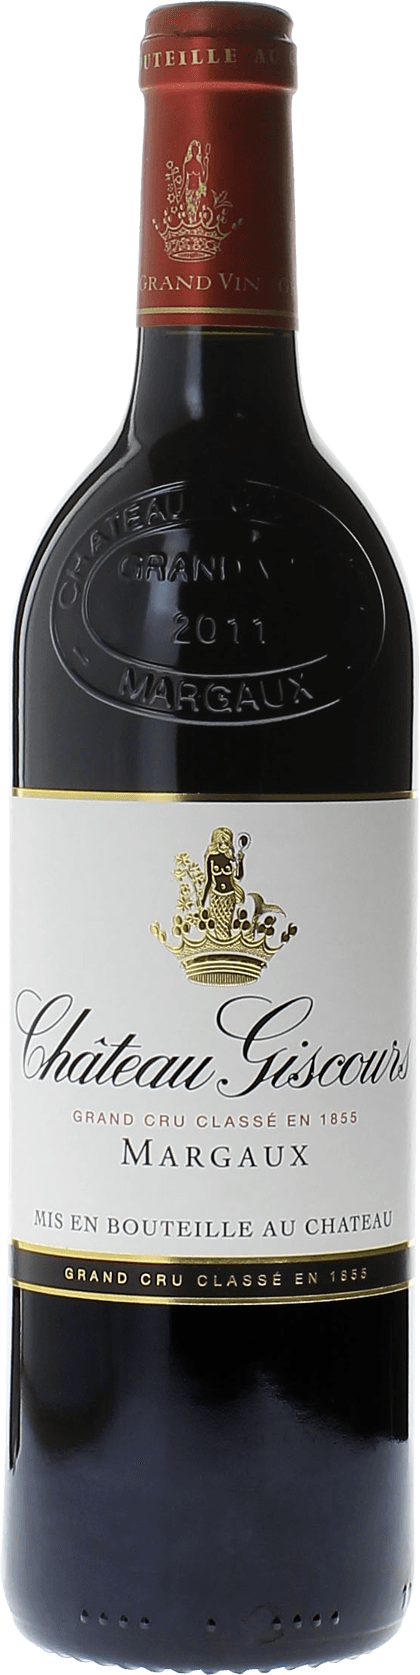 Giscours 1985 3me Grand cru class Margaux, Bordeaux rouge